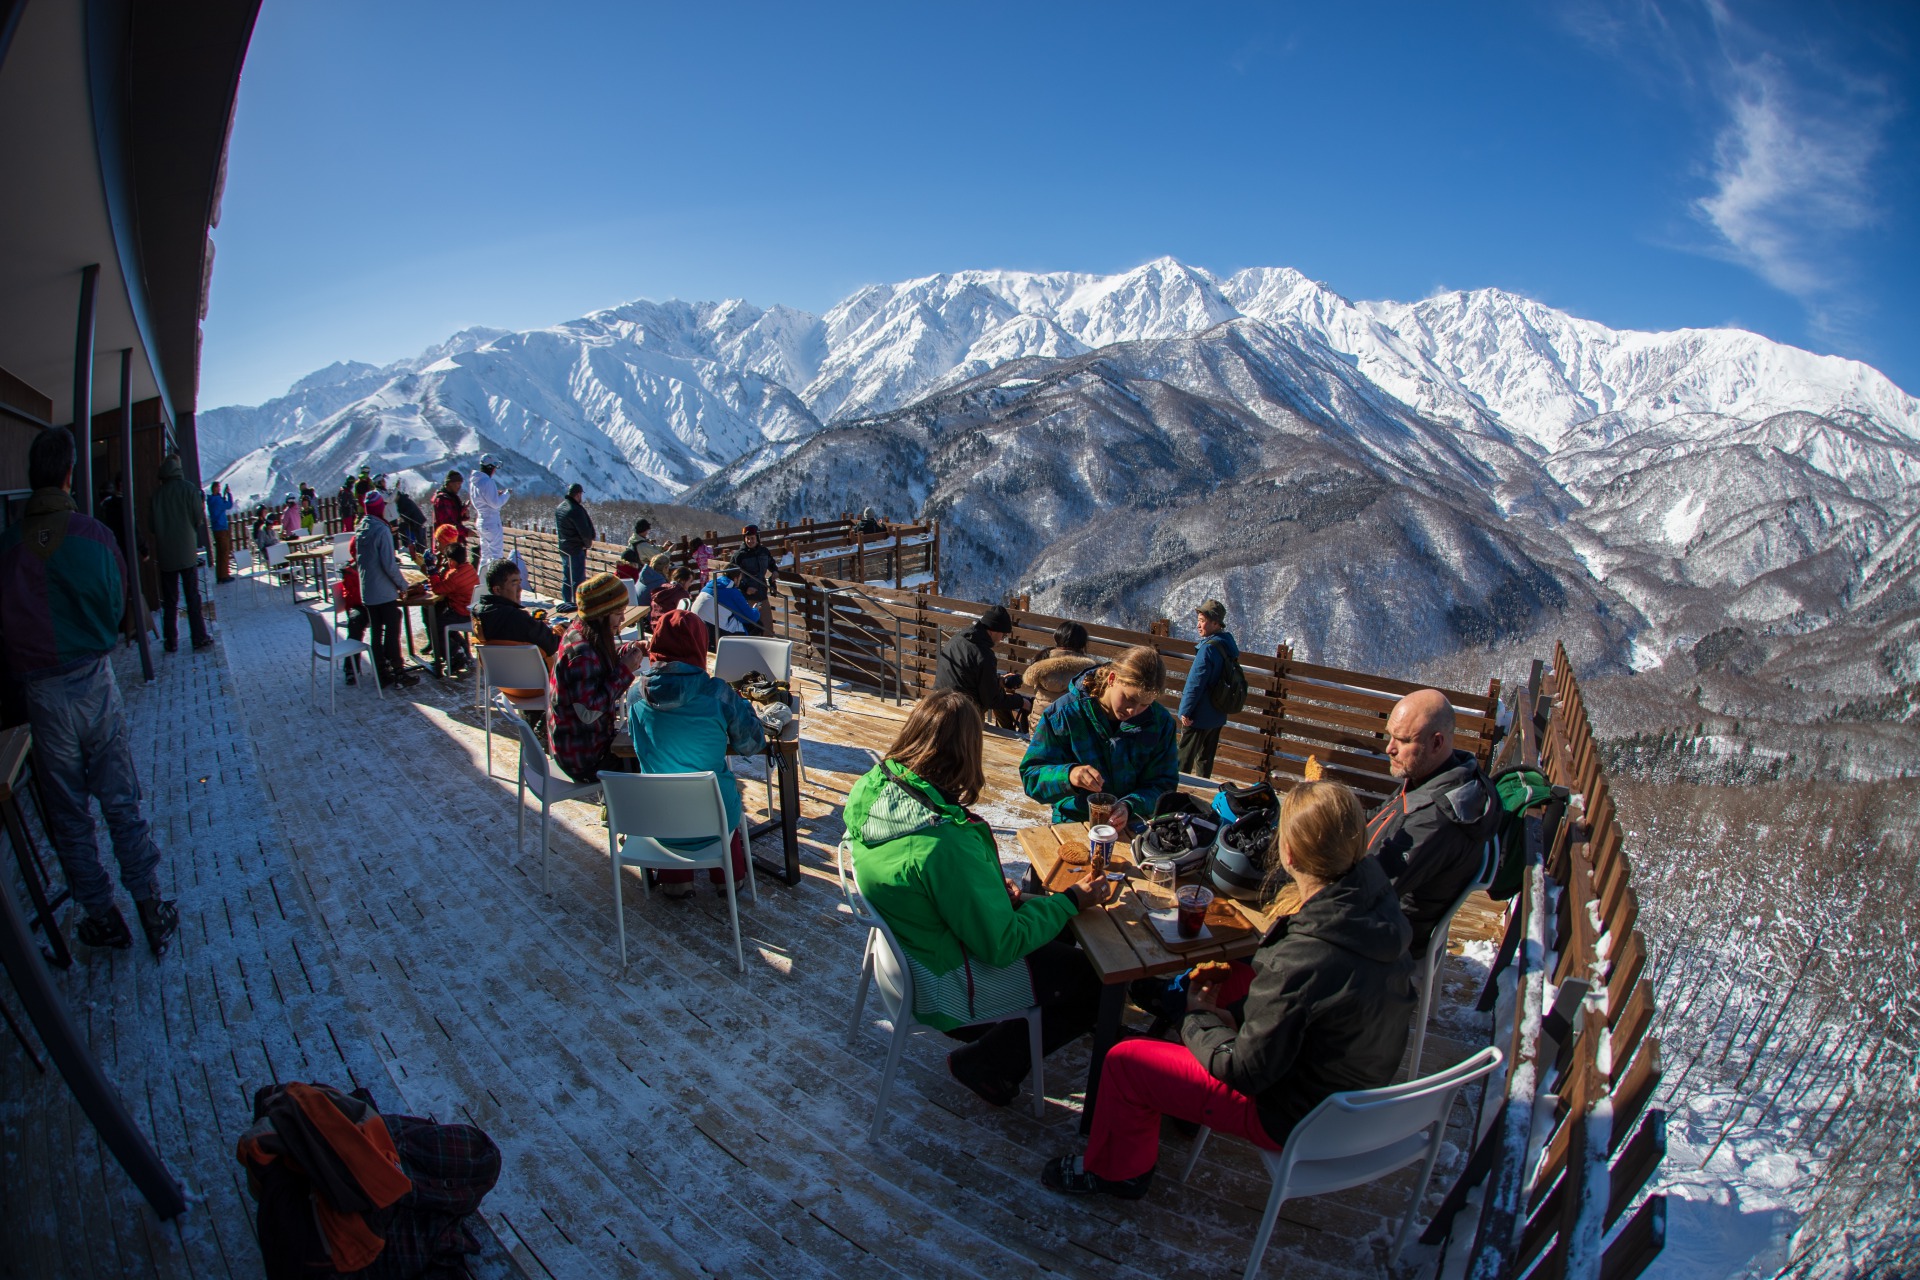 長野県白馬エリア 冬スキー以外の観光強化で 雪遊び客 が2倍に 岩岳で トラベルボイス 観光産業ニュース